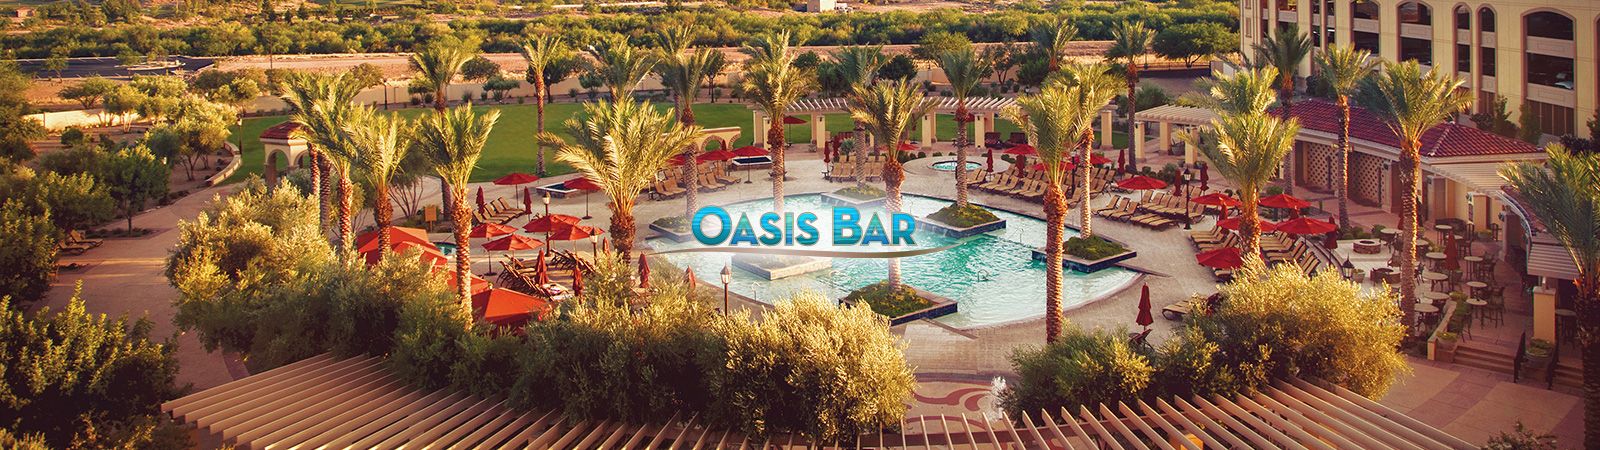 Oasis Bar at Casino Del Sol